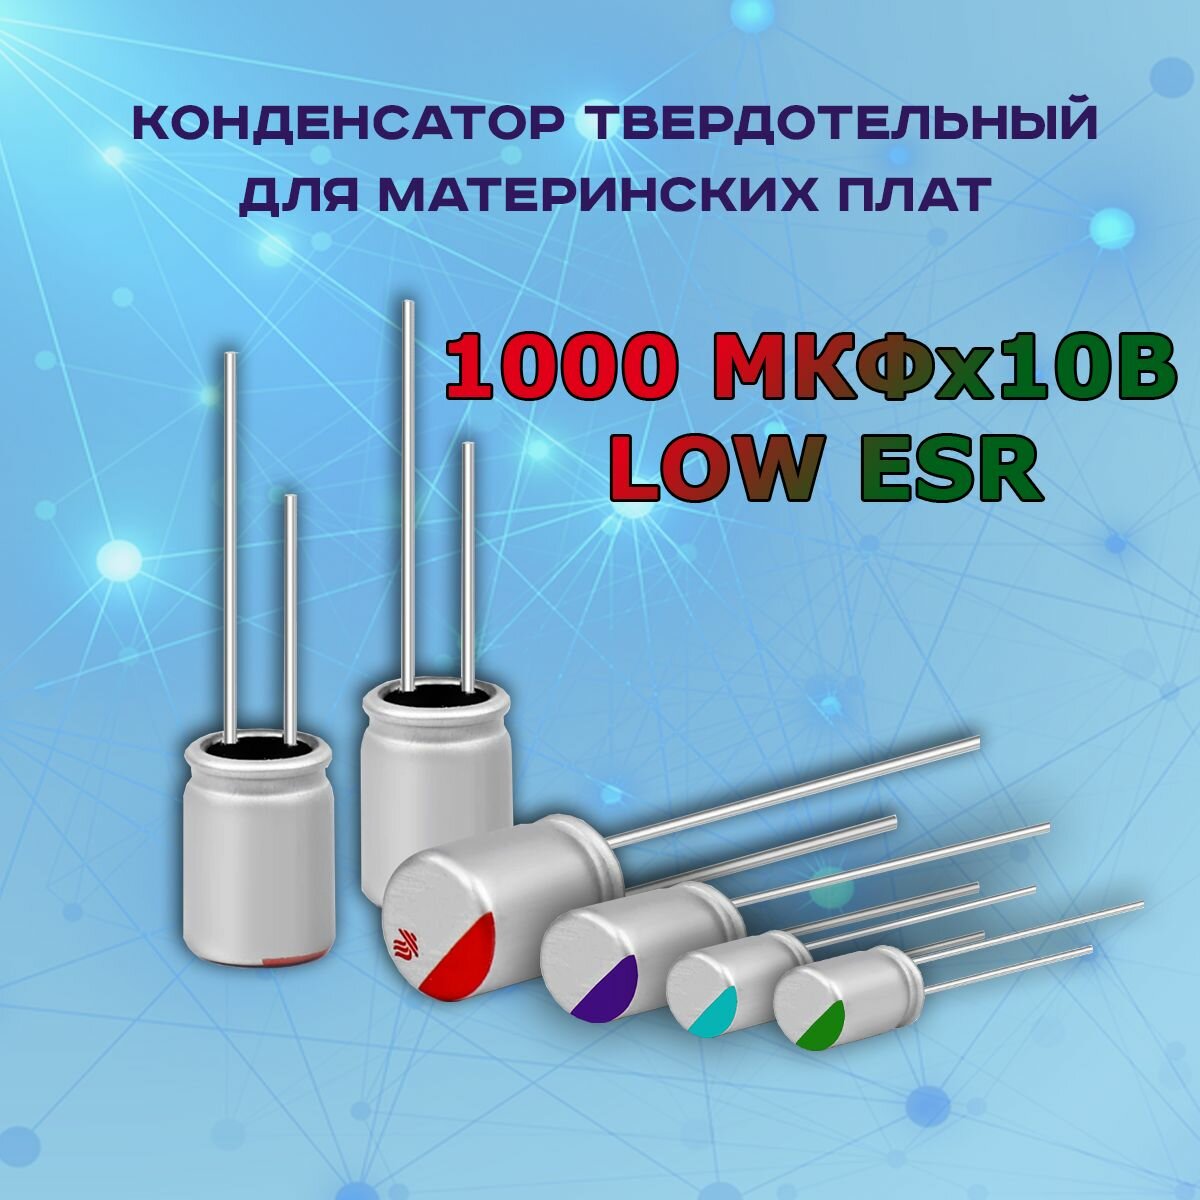 Конденсатор для материнской платы твердотельный 1000 микрофарат 10 Вольт 1000 МКФх10В LOW ESR - 1 шт.